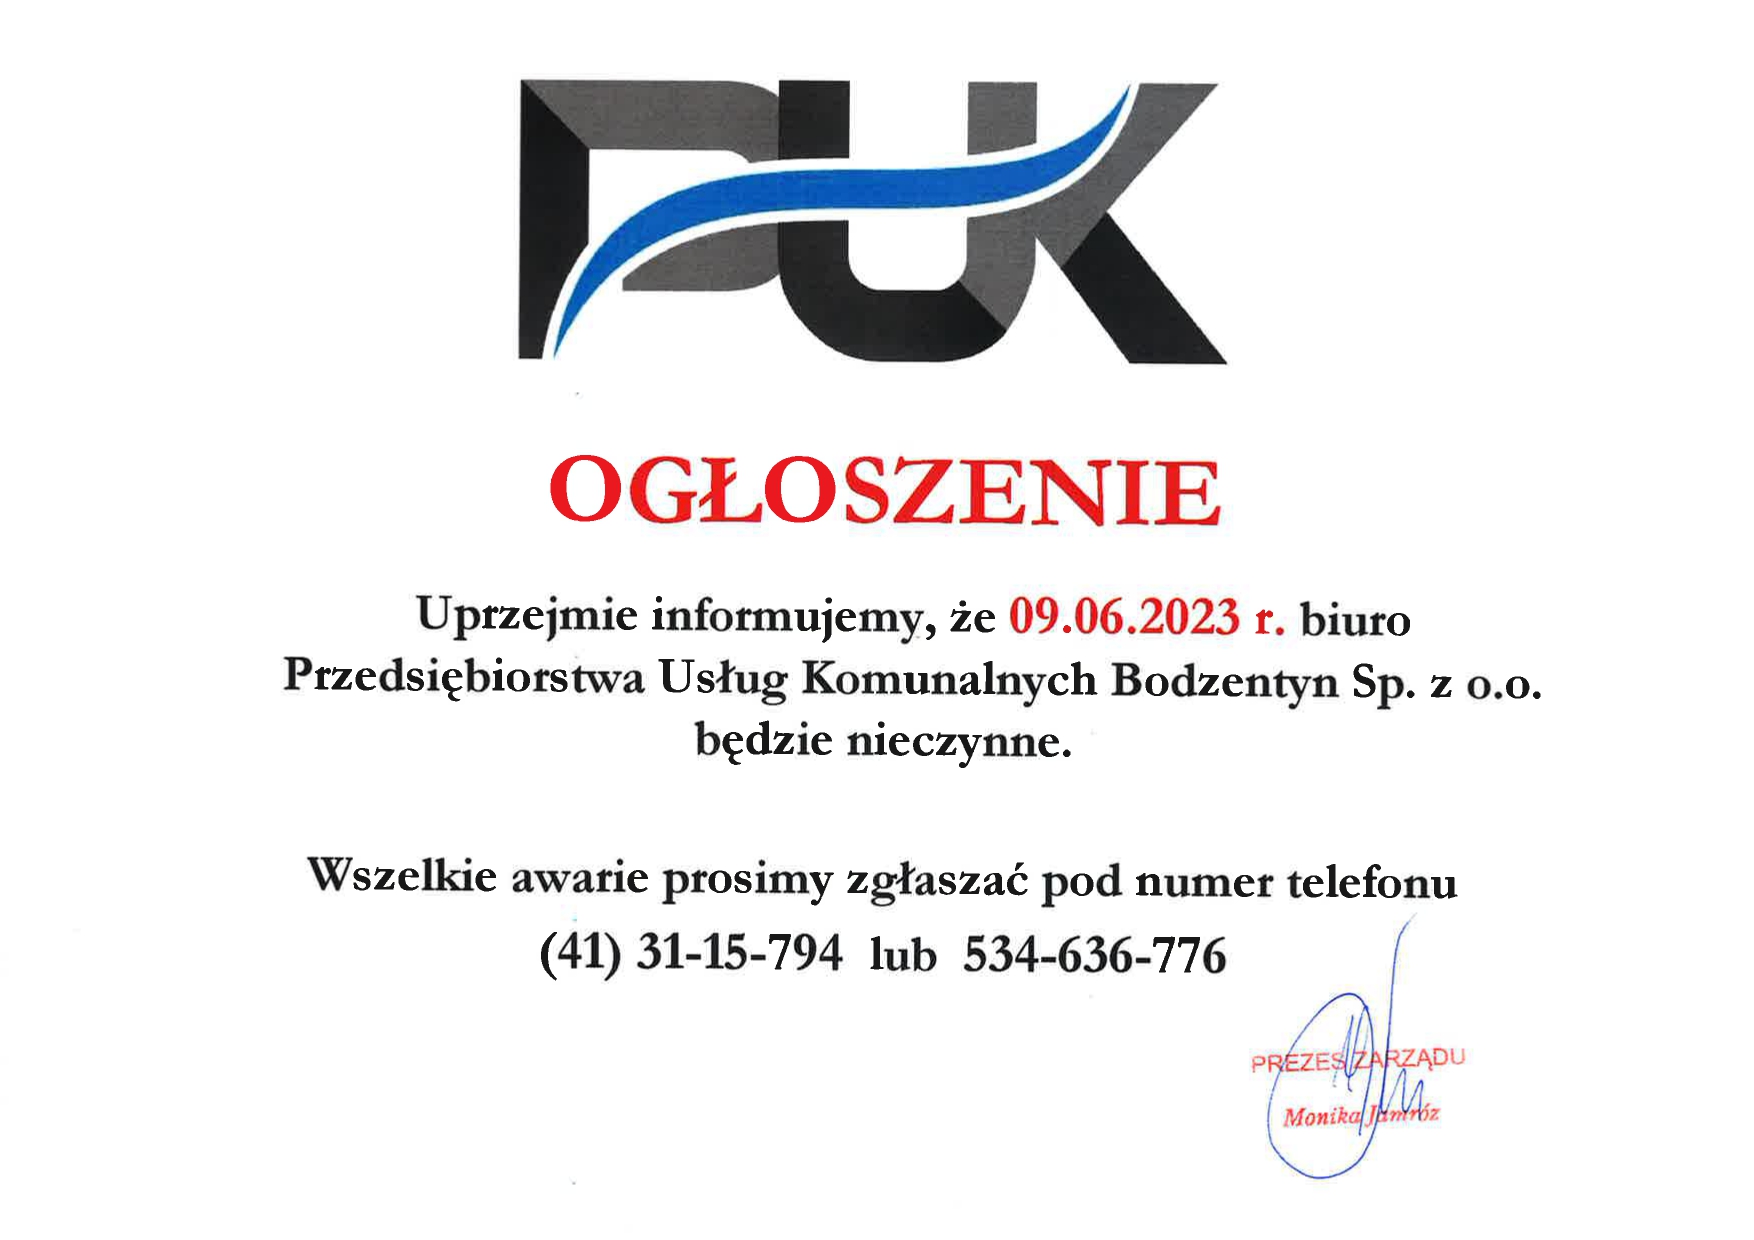 Biuro Przedsiębiorstwa Usług Komunalnych Bodzentyn Sp. z o.o. będzie nieczynne w dniu 09.06.2023 r.